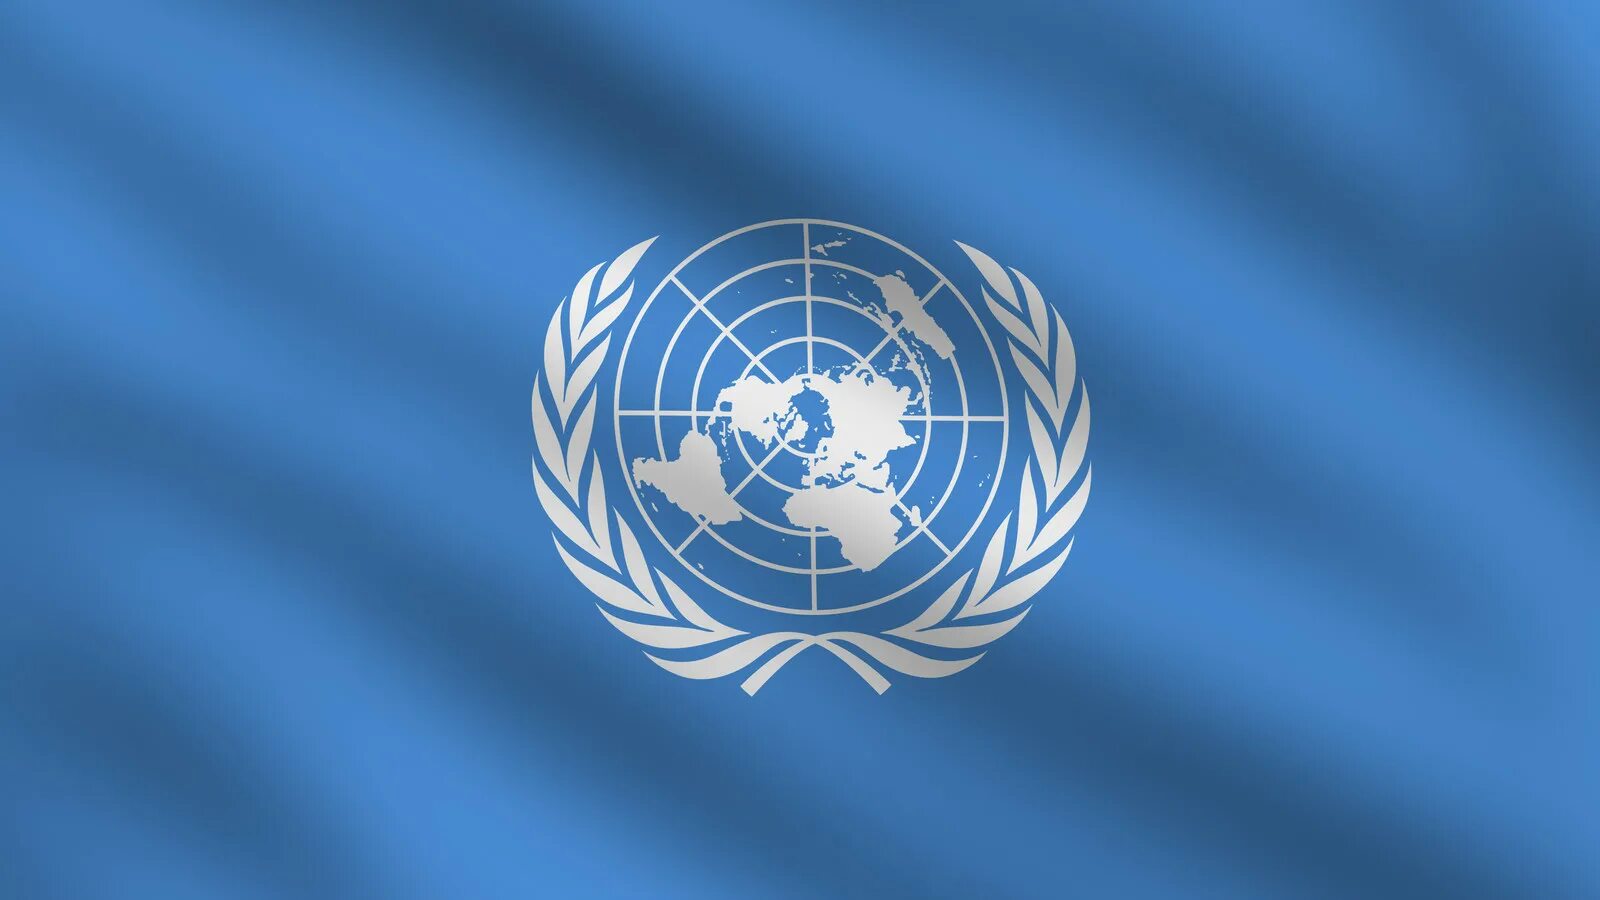 Е оон. Организация Объединенных наций (ООН). Генеральная Ассамблея ООН флаг. Флаг организации Объединенных наций. Международные организации ООН.